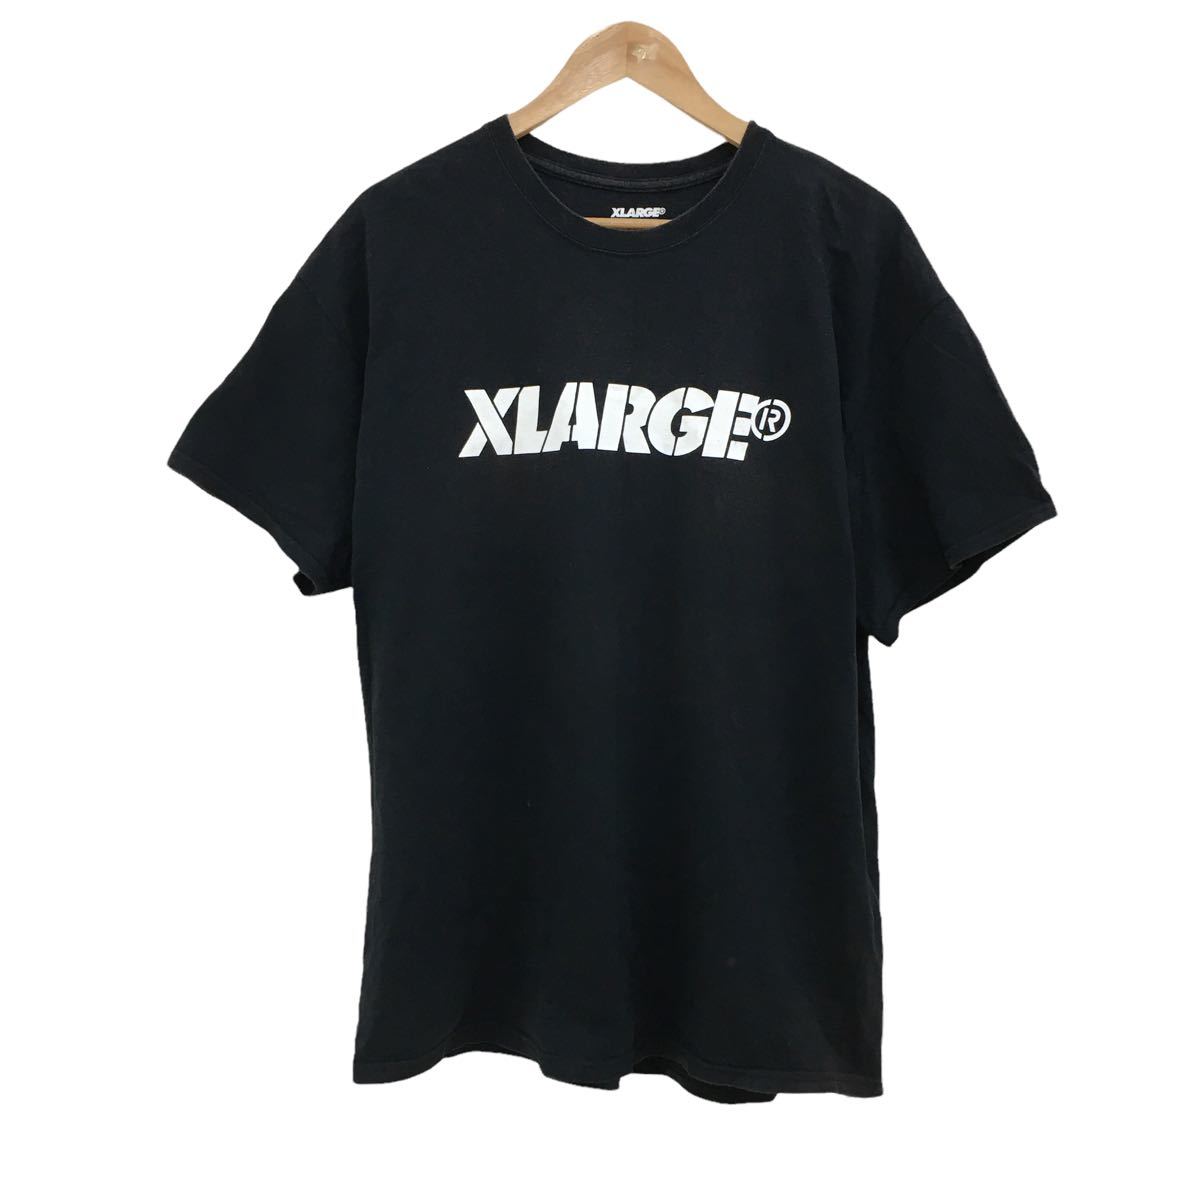 ヤフオク! -「xlarge」(半袖) (Tシャツ)の落札相場・落札価格